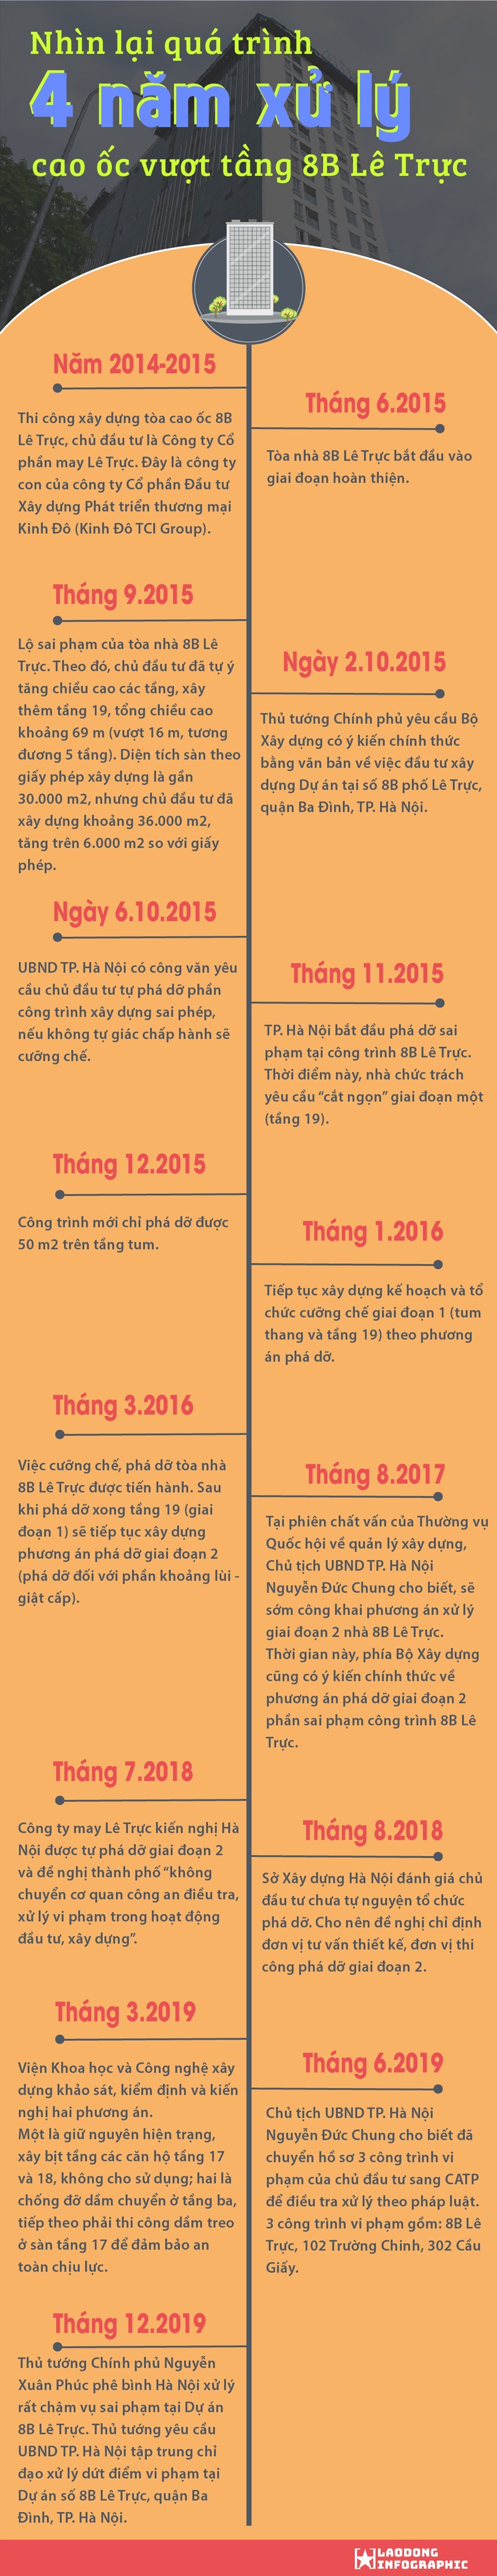 Infographic: Cường Ngô - Nhật Huy